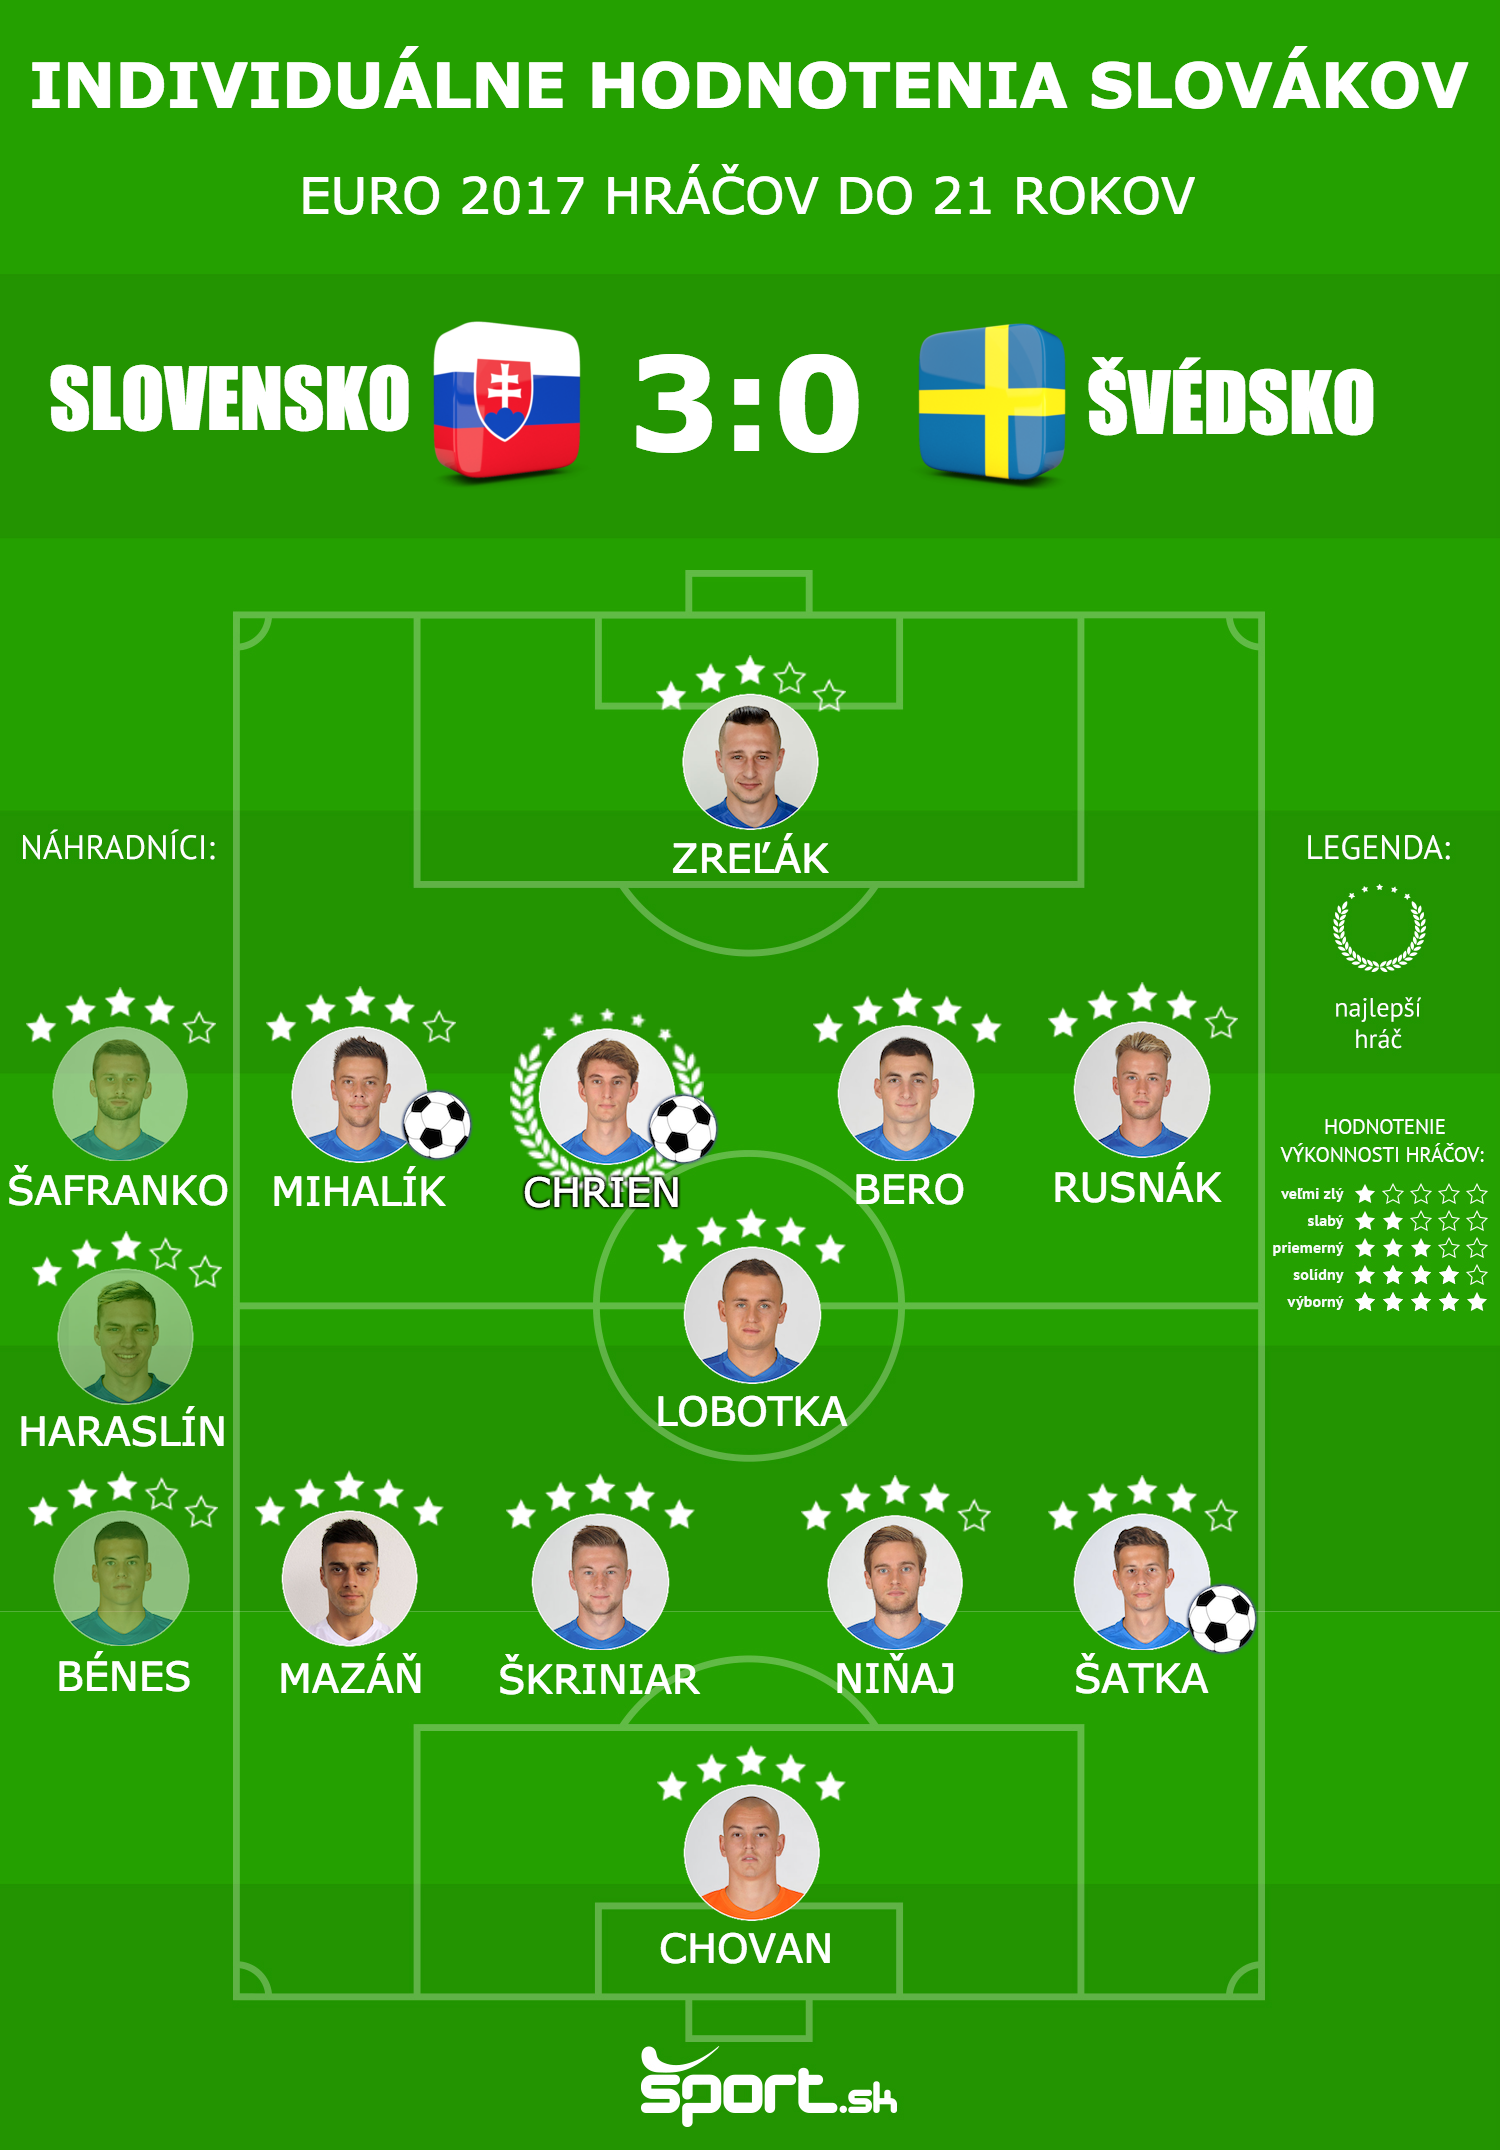 Slovensko - Švédsko (EURO 2017 U21) individuálne hodnotenia hráčov.